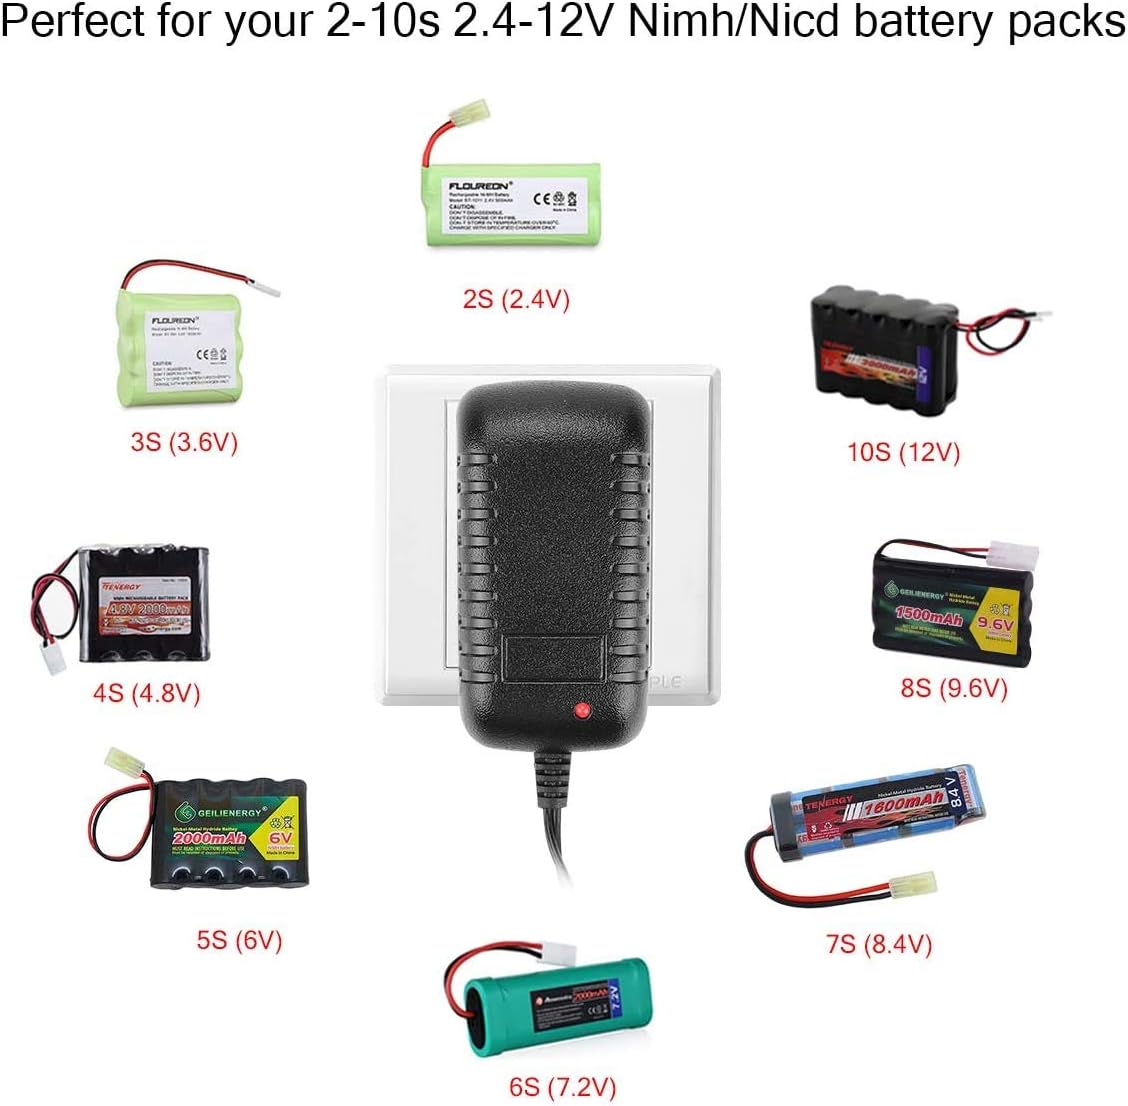 Chargeur de batterie HTRC NiMH et NiCd Chargeur de batterie RC universel (2-10S) 